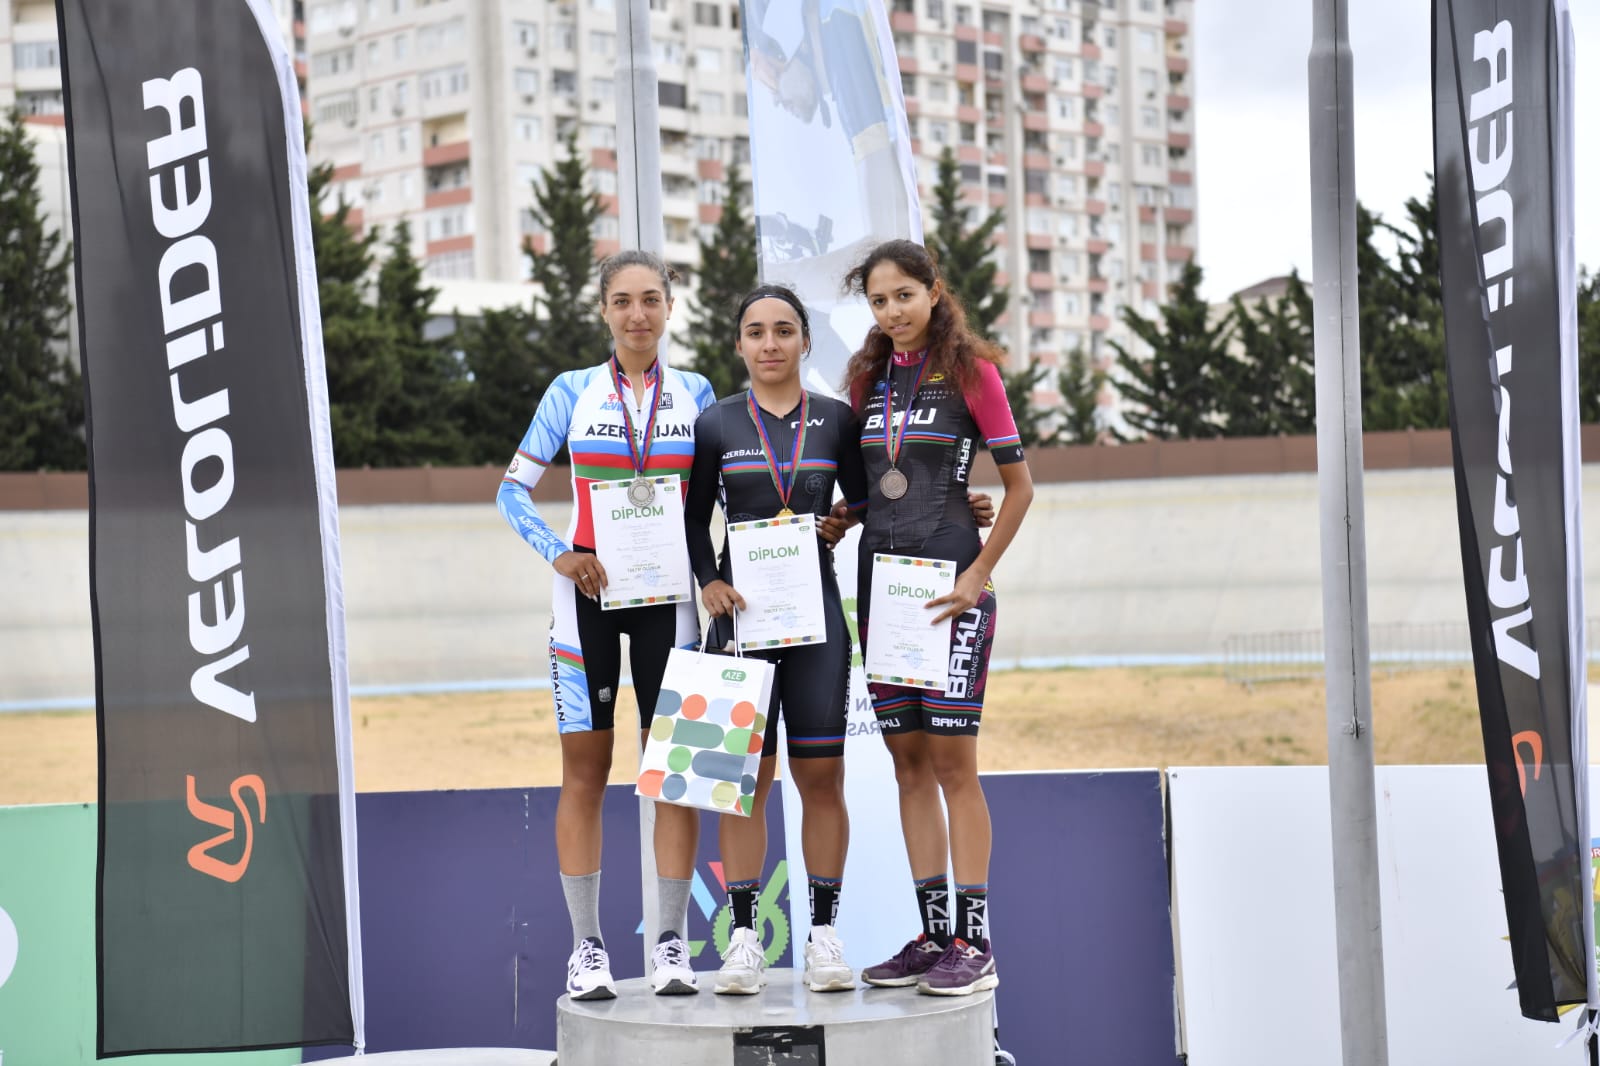 Trek velosipedi üzrə Azərbaycan çempionatı başa çatıb